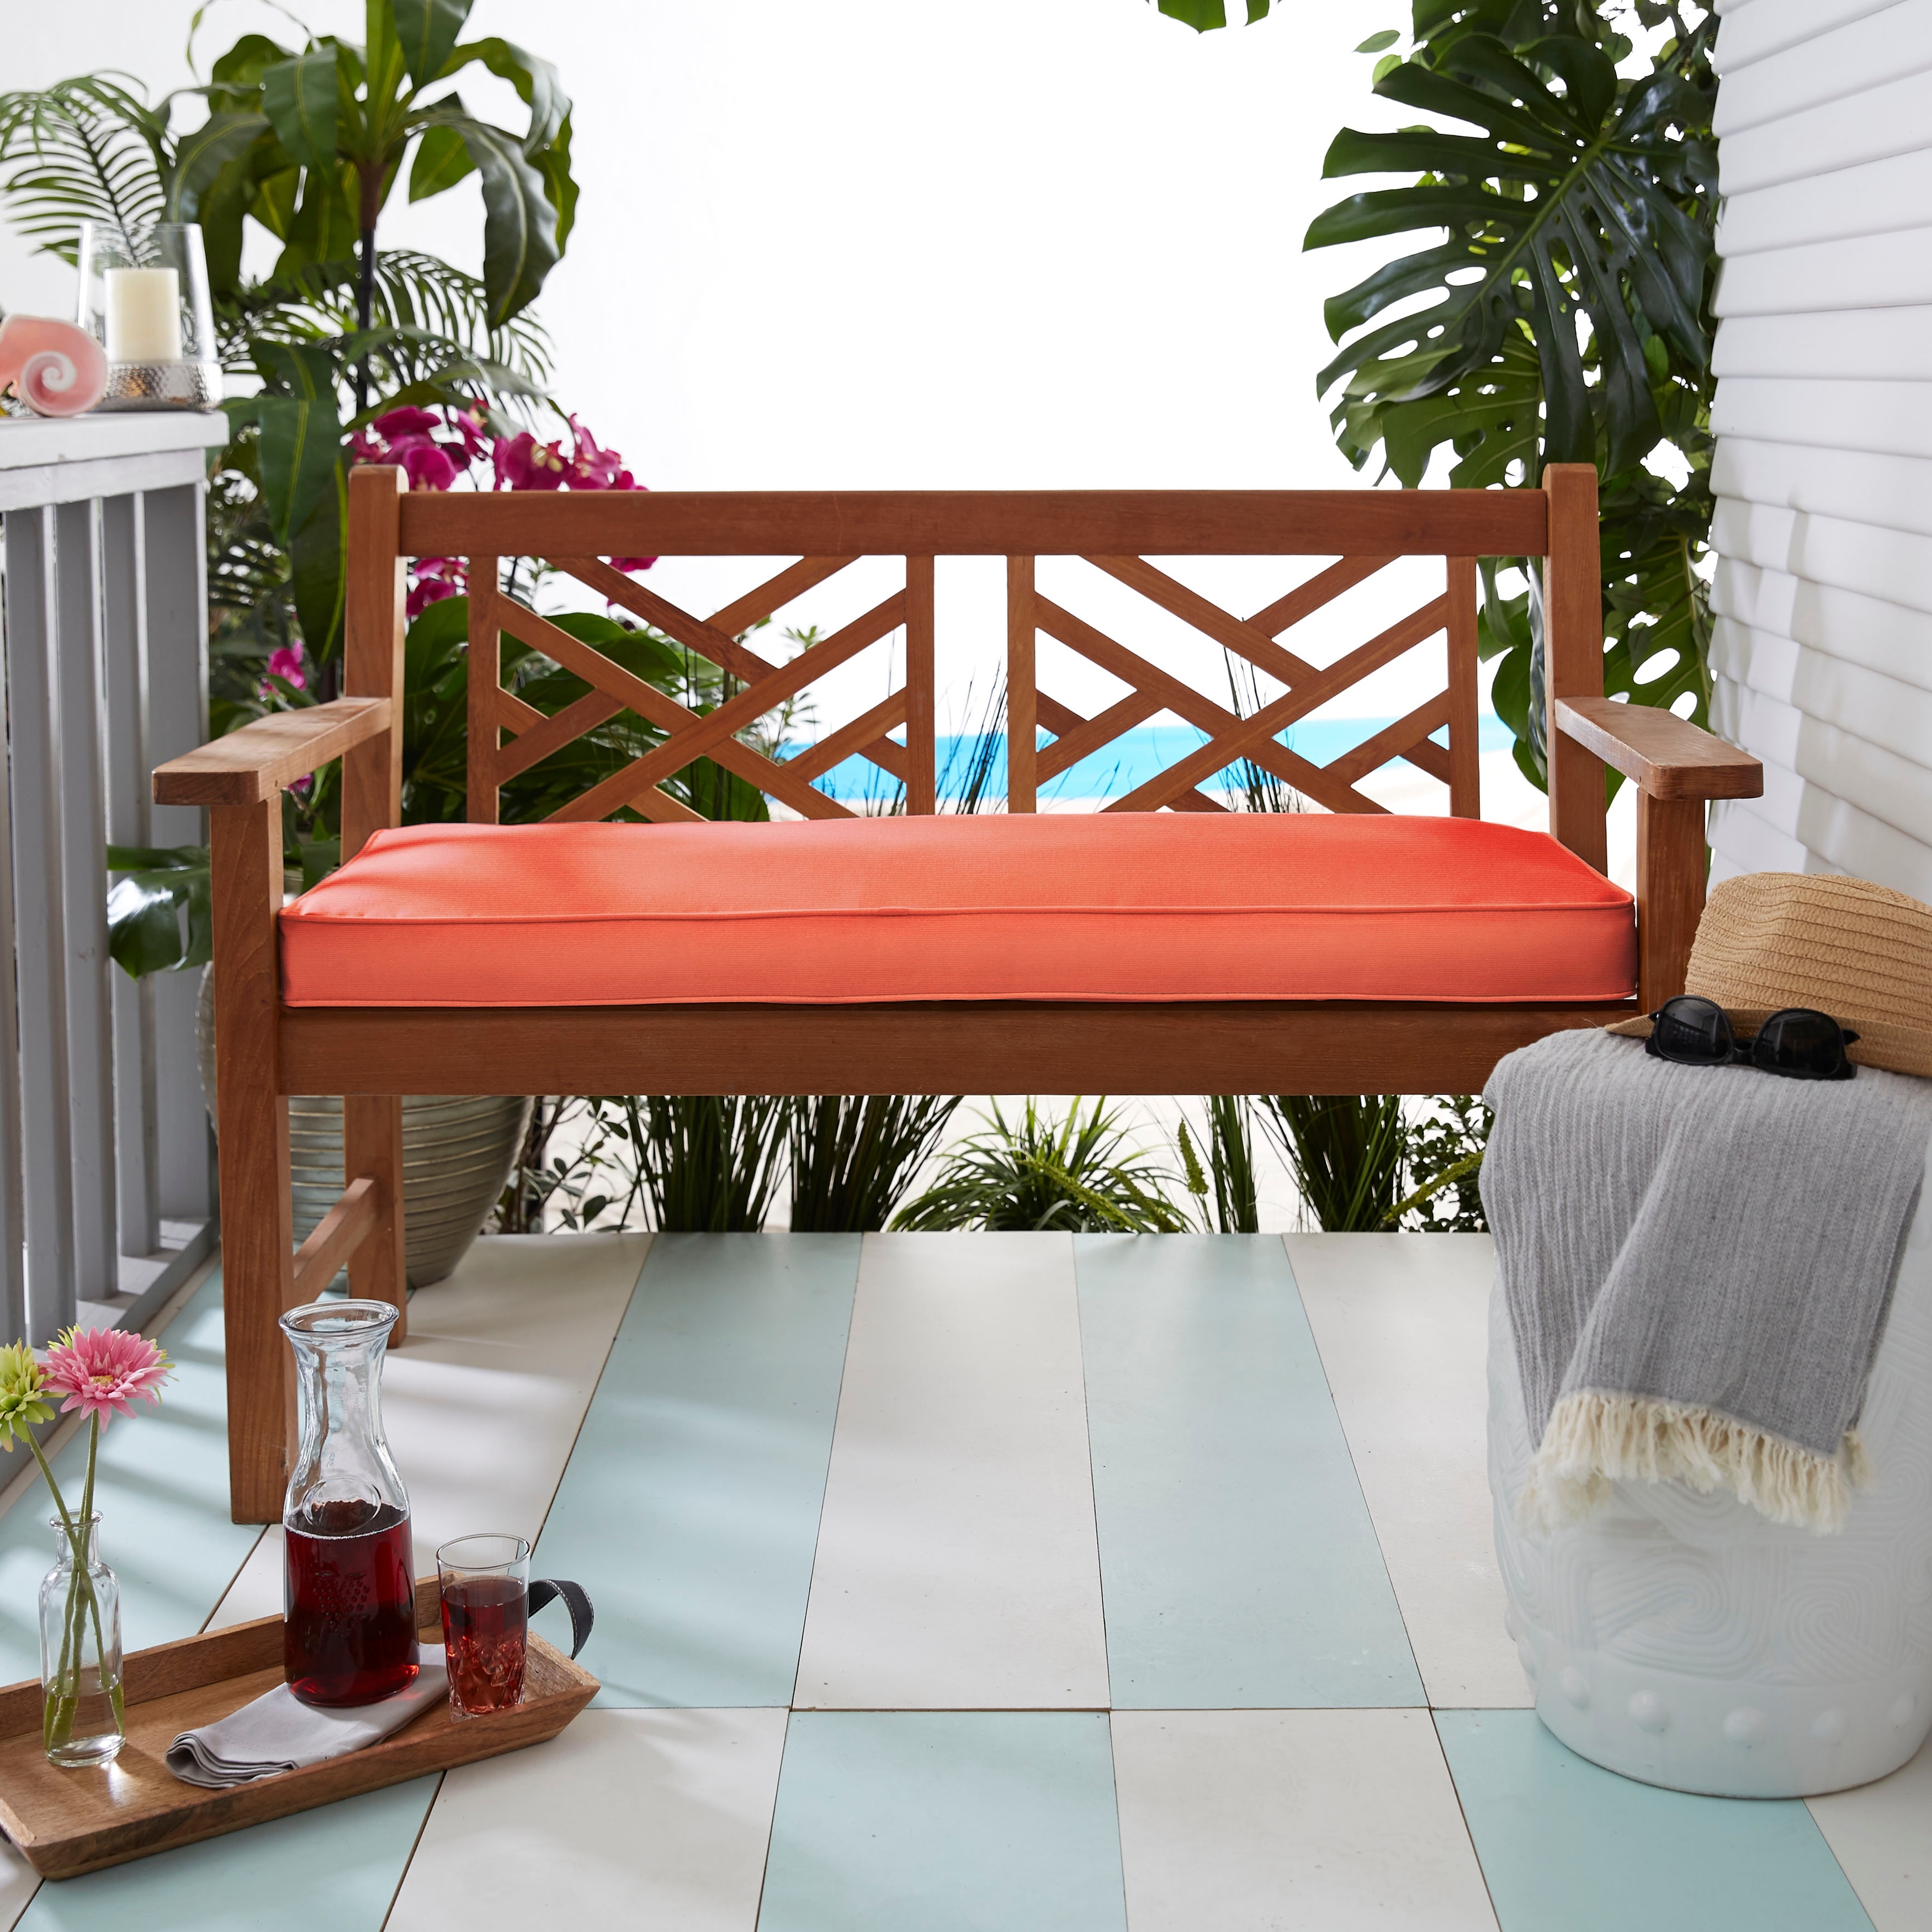 48 x 48 x 4 Papasan Outdoor Chair Cushion Coral - Sorra Home